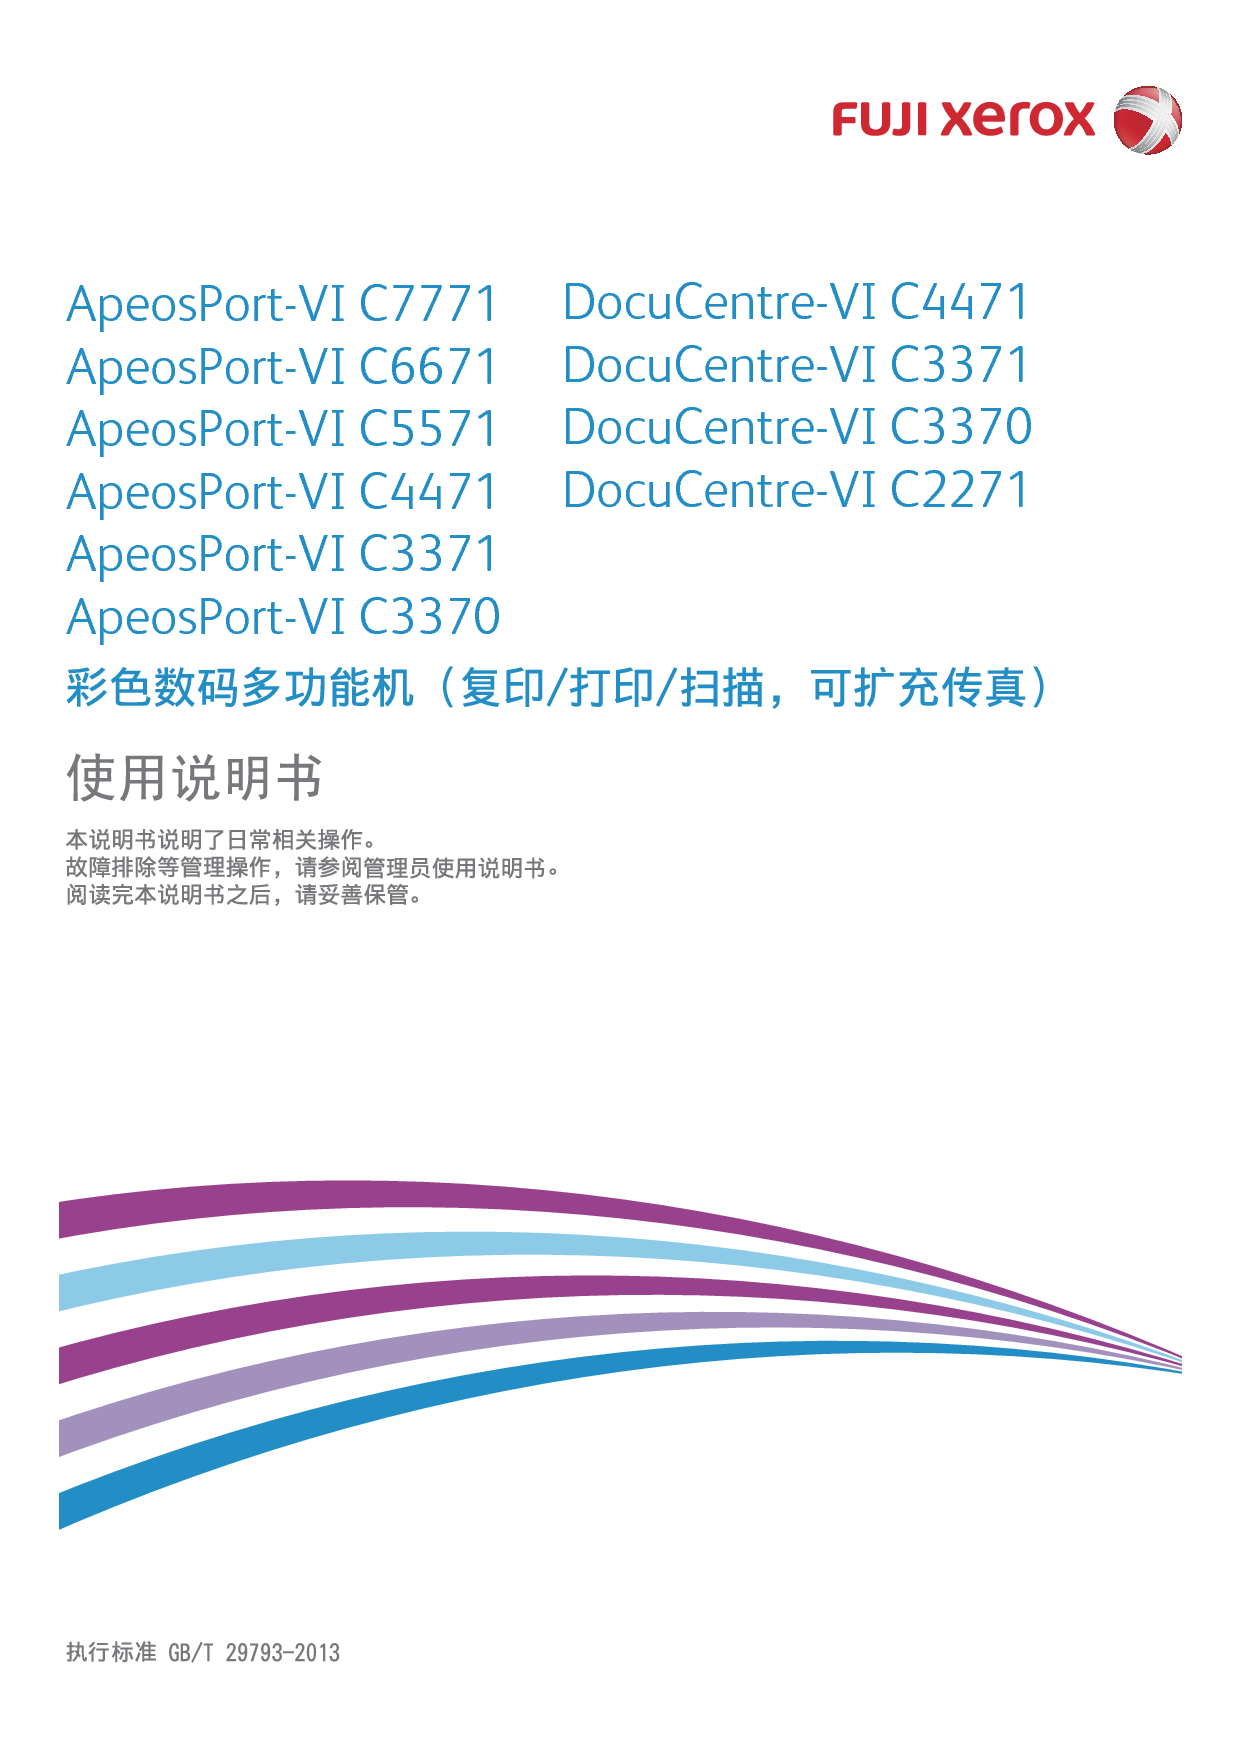 富士施乐 Fuji Xerox ApeosPort-VI C3370, DocuCentre-VI C2271 使用说明书 封面